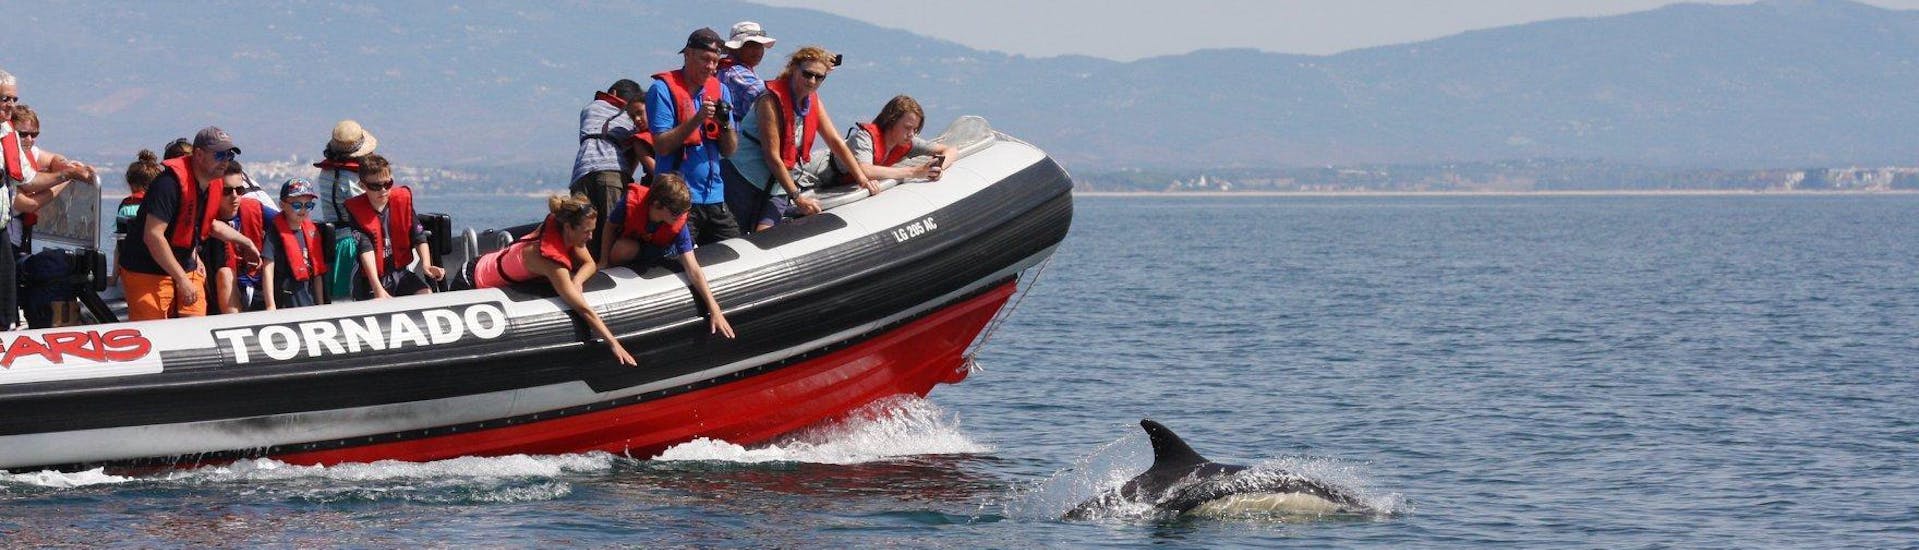 Alcuni partecipanti al giro in barca per avvistare i delfini a Portimao con Seafaris Algarve, ammirano i simpatici cetacei dalla barca.